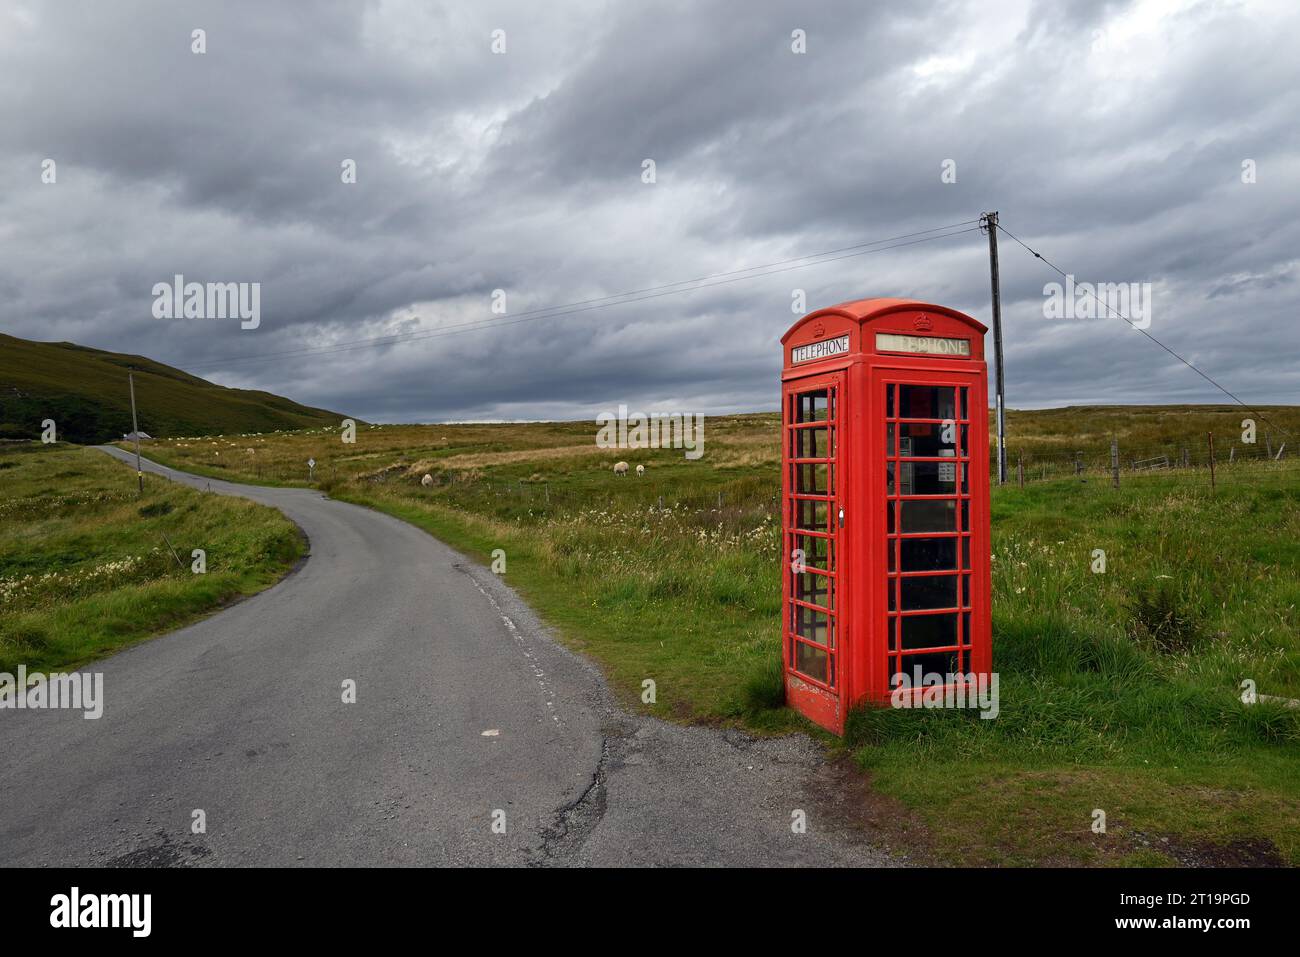 Une cabine téléphonique britannique typique sur une route déserte des îles de Skye, en Écosse. Banque D'Images